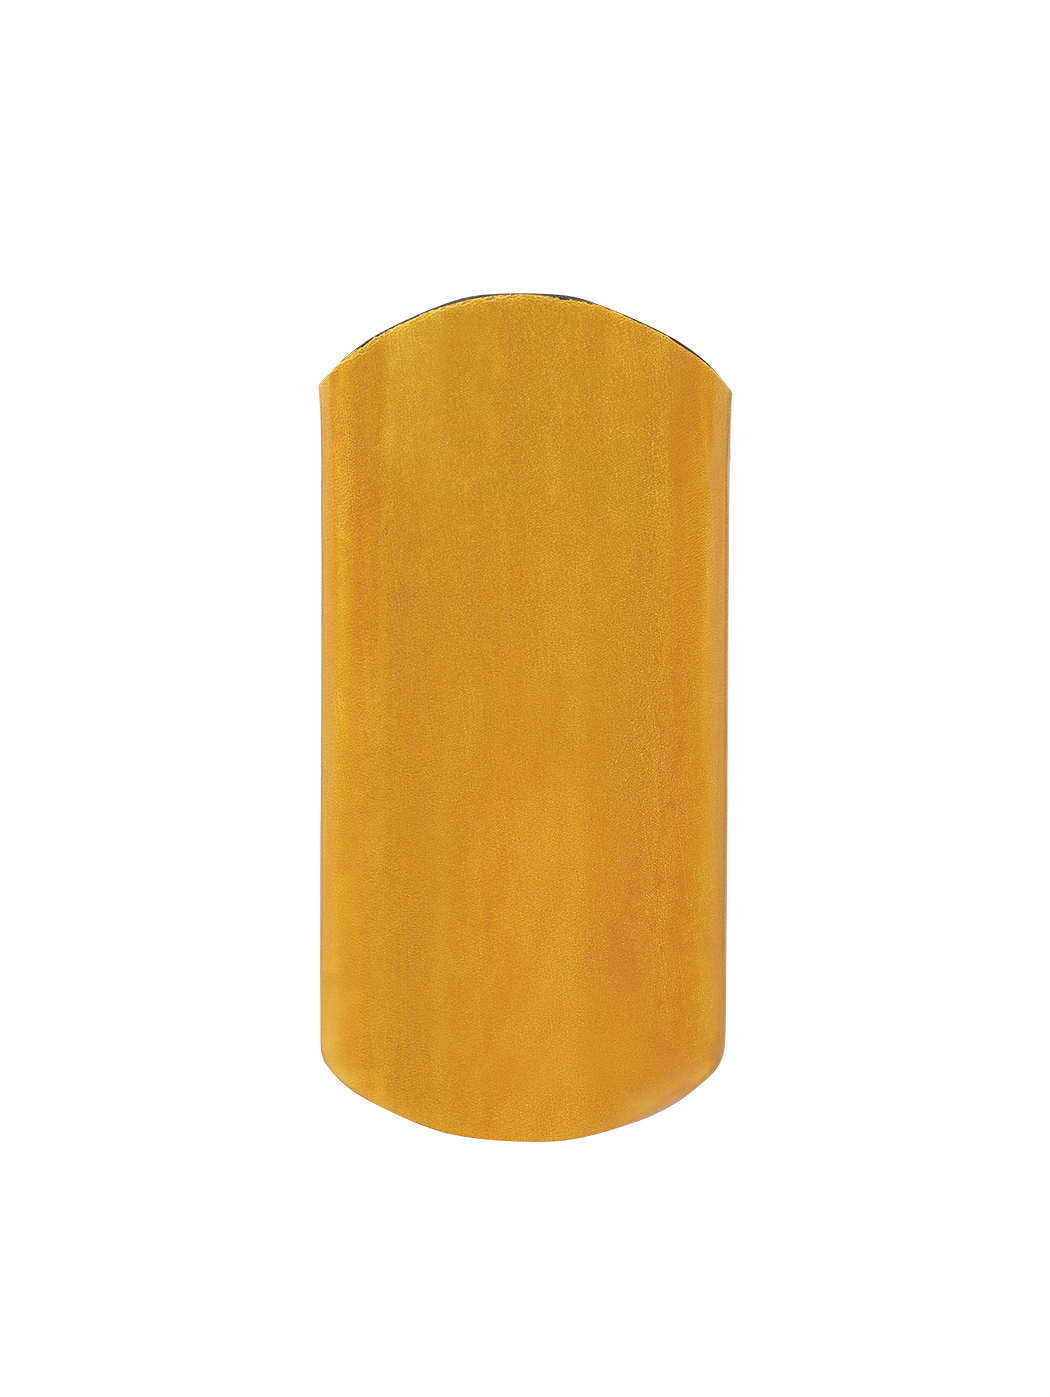 Кожаный футляр для очков ручной работы желтого цвета